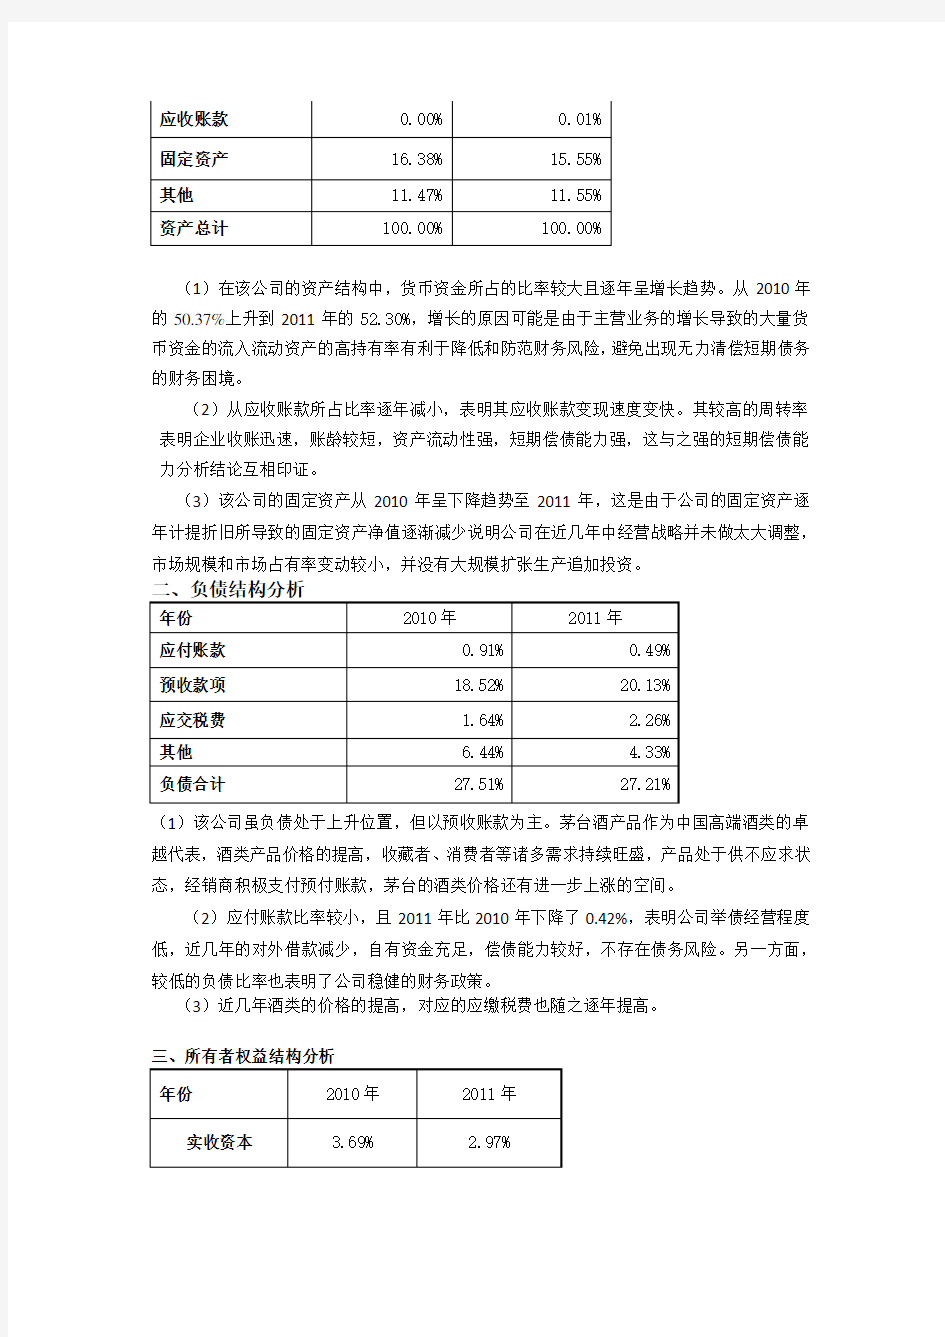 贵州茅台资产负债表结构分析(2010年-2011年)